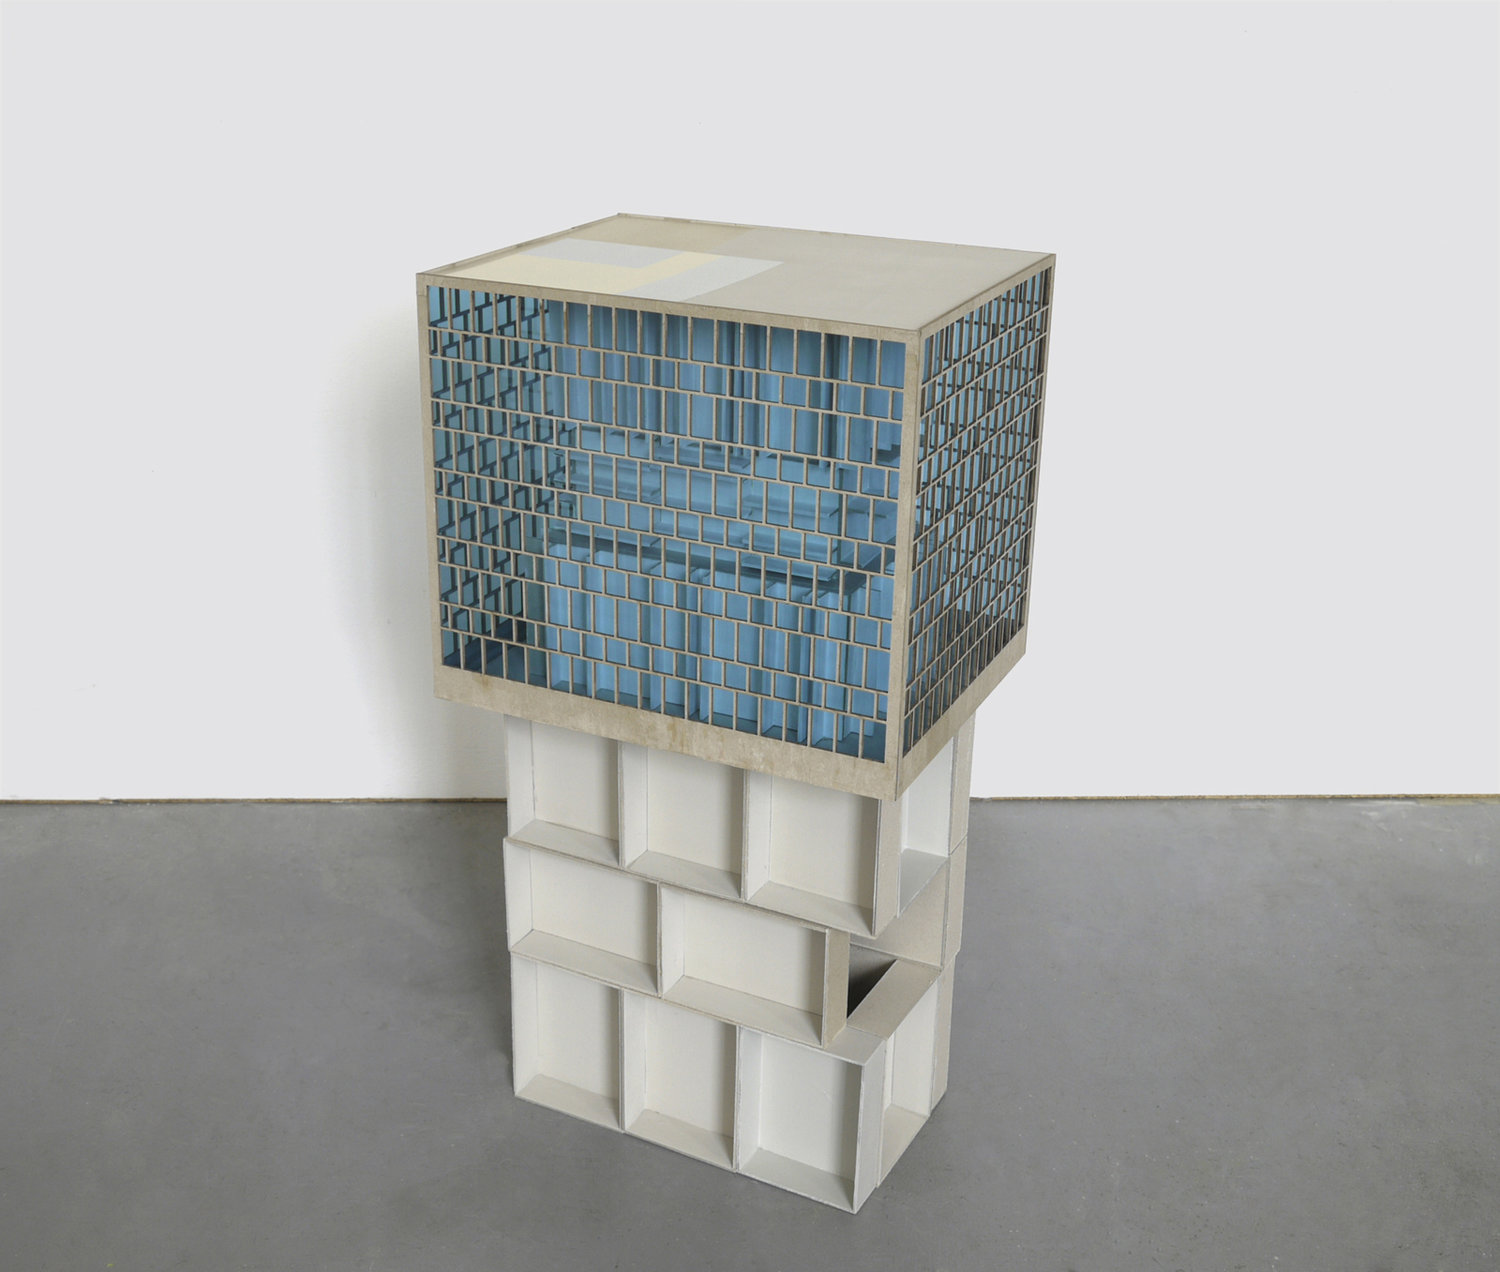  Räume unter sich, 2015, Karton, Plexiglas, 90 x 46 x 37 cm 